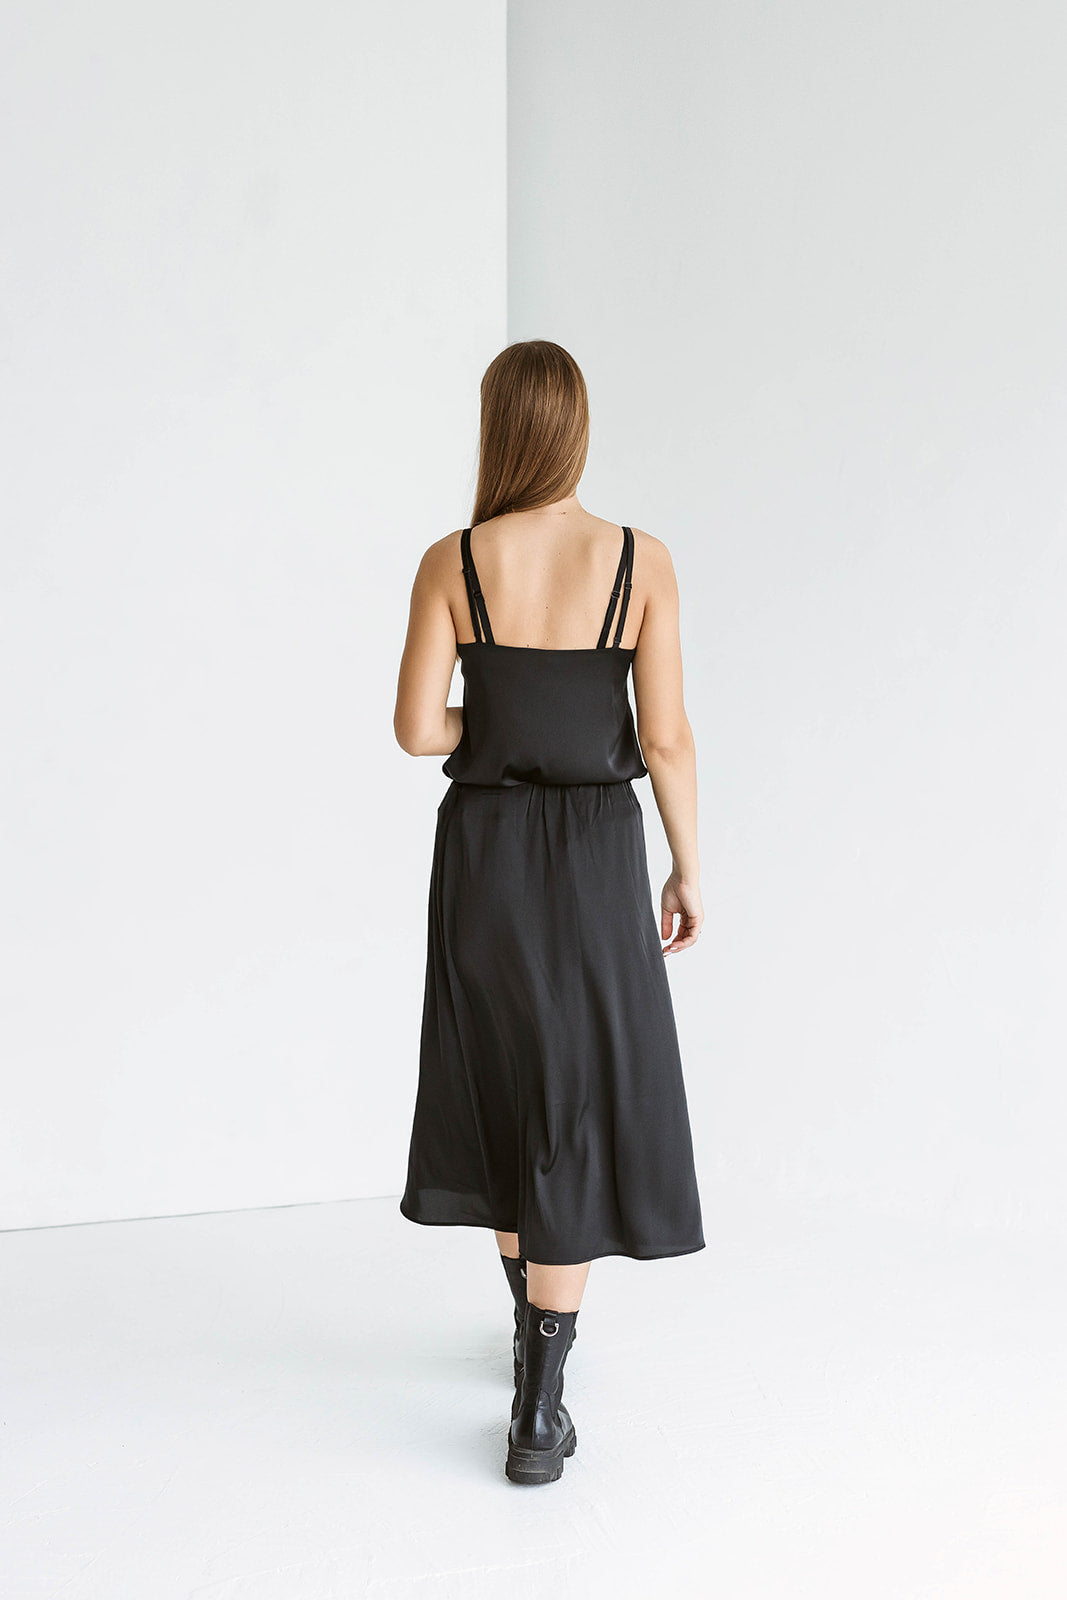 Lengvas varpelio formos sijonas. Juodas